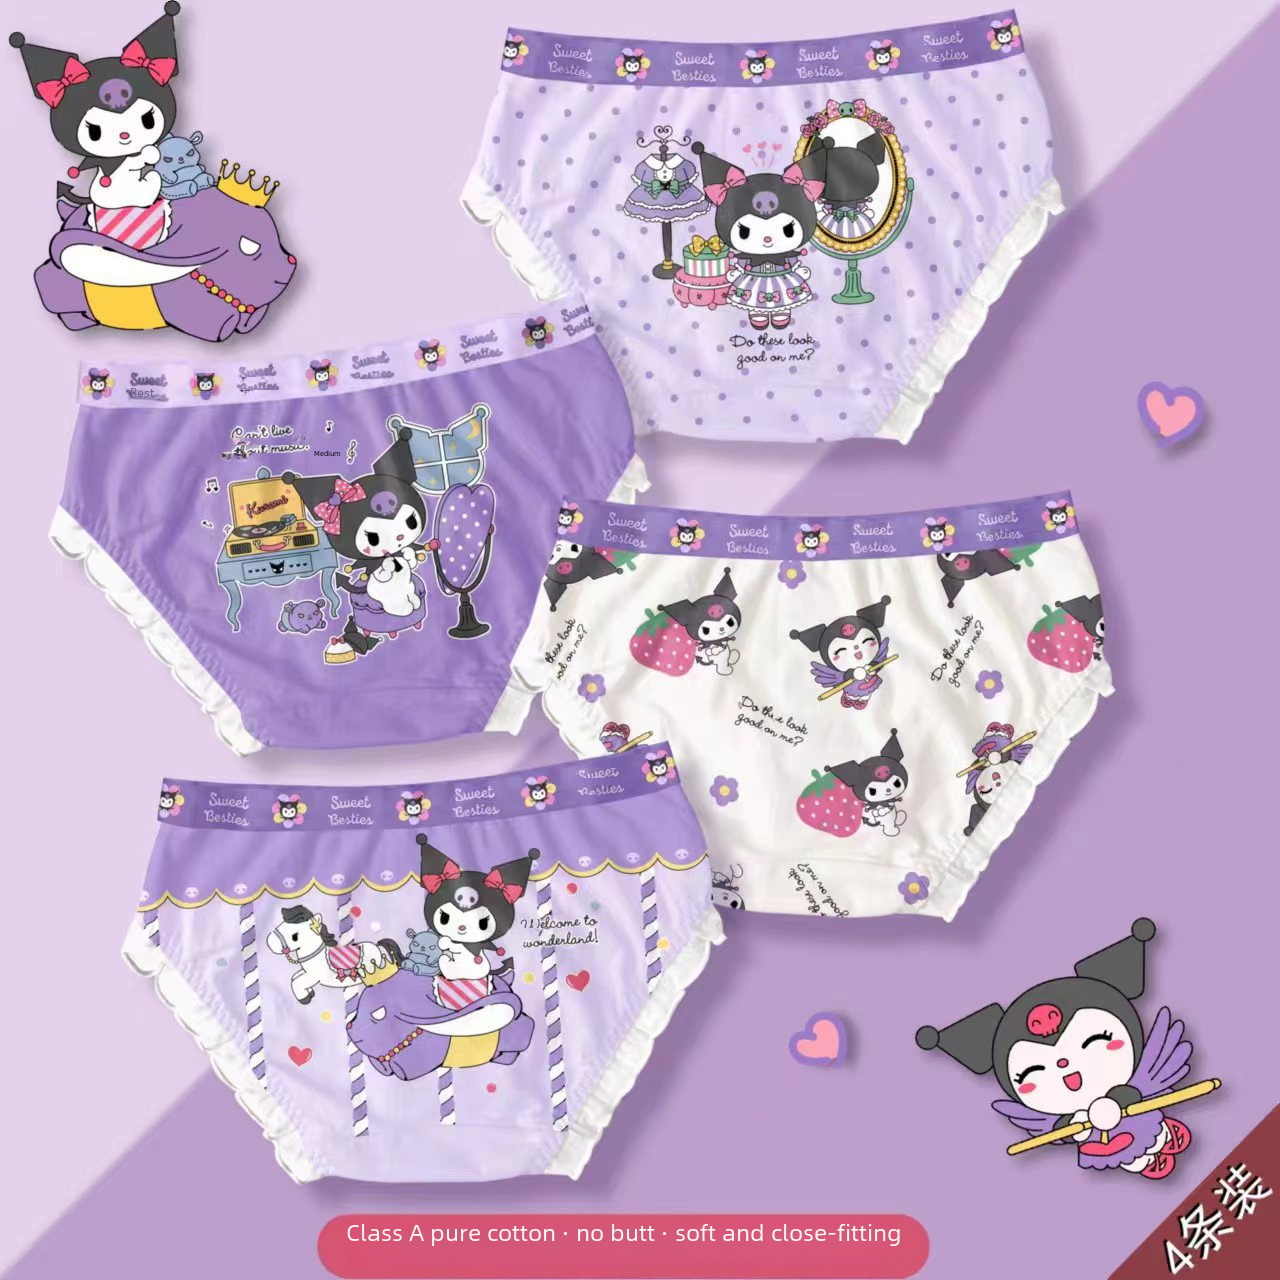 Pure Cotton Girls' Underwear Cartoon Mermaid Boxer Shorts Children's Underwear